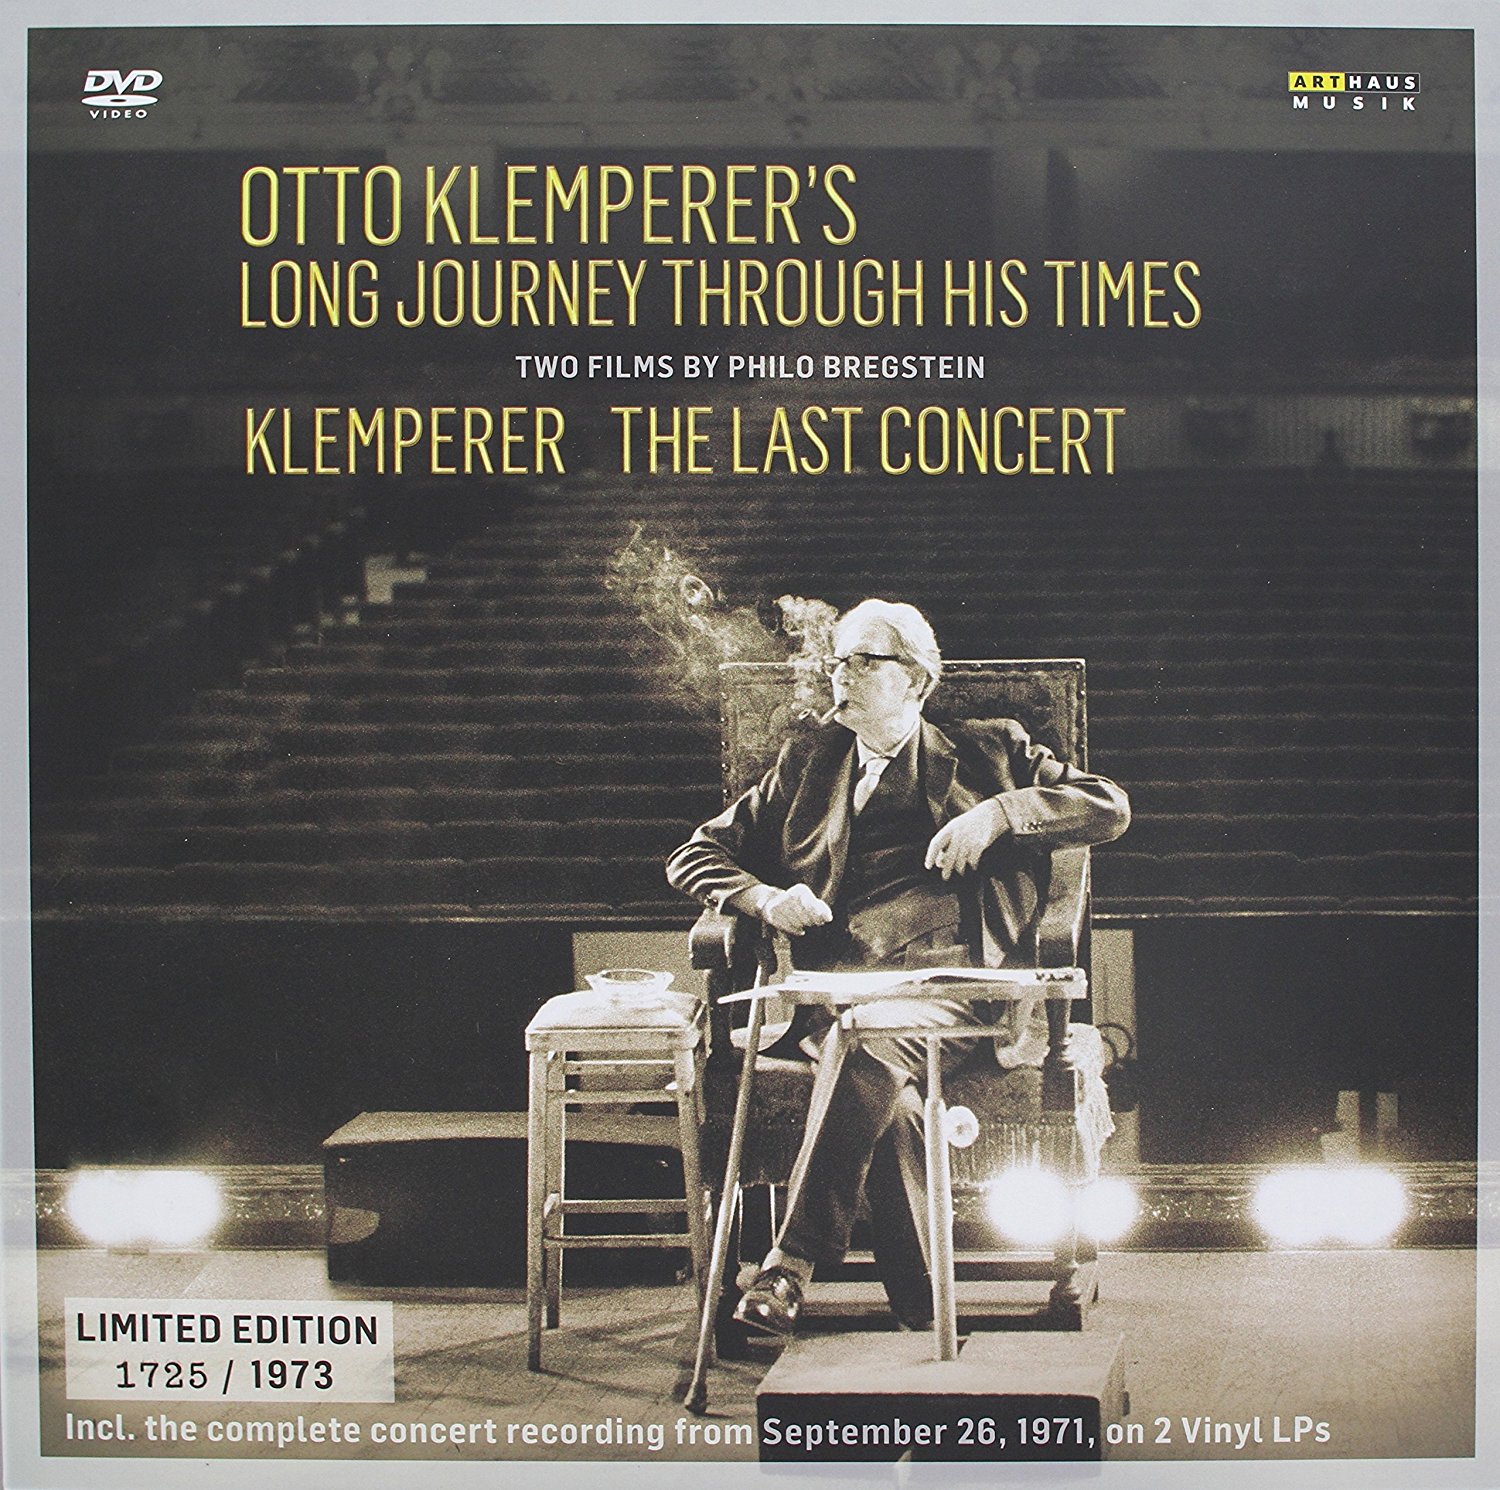 Vinile Otto Klemperer's Long Journey Through His Times / Klemperer The Last Concert (2 Dvd+2 Lp) NUOVO SIGILLATO, EDIZIONE DEL 13/01/2017 SUBITO DISPONIBILE